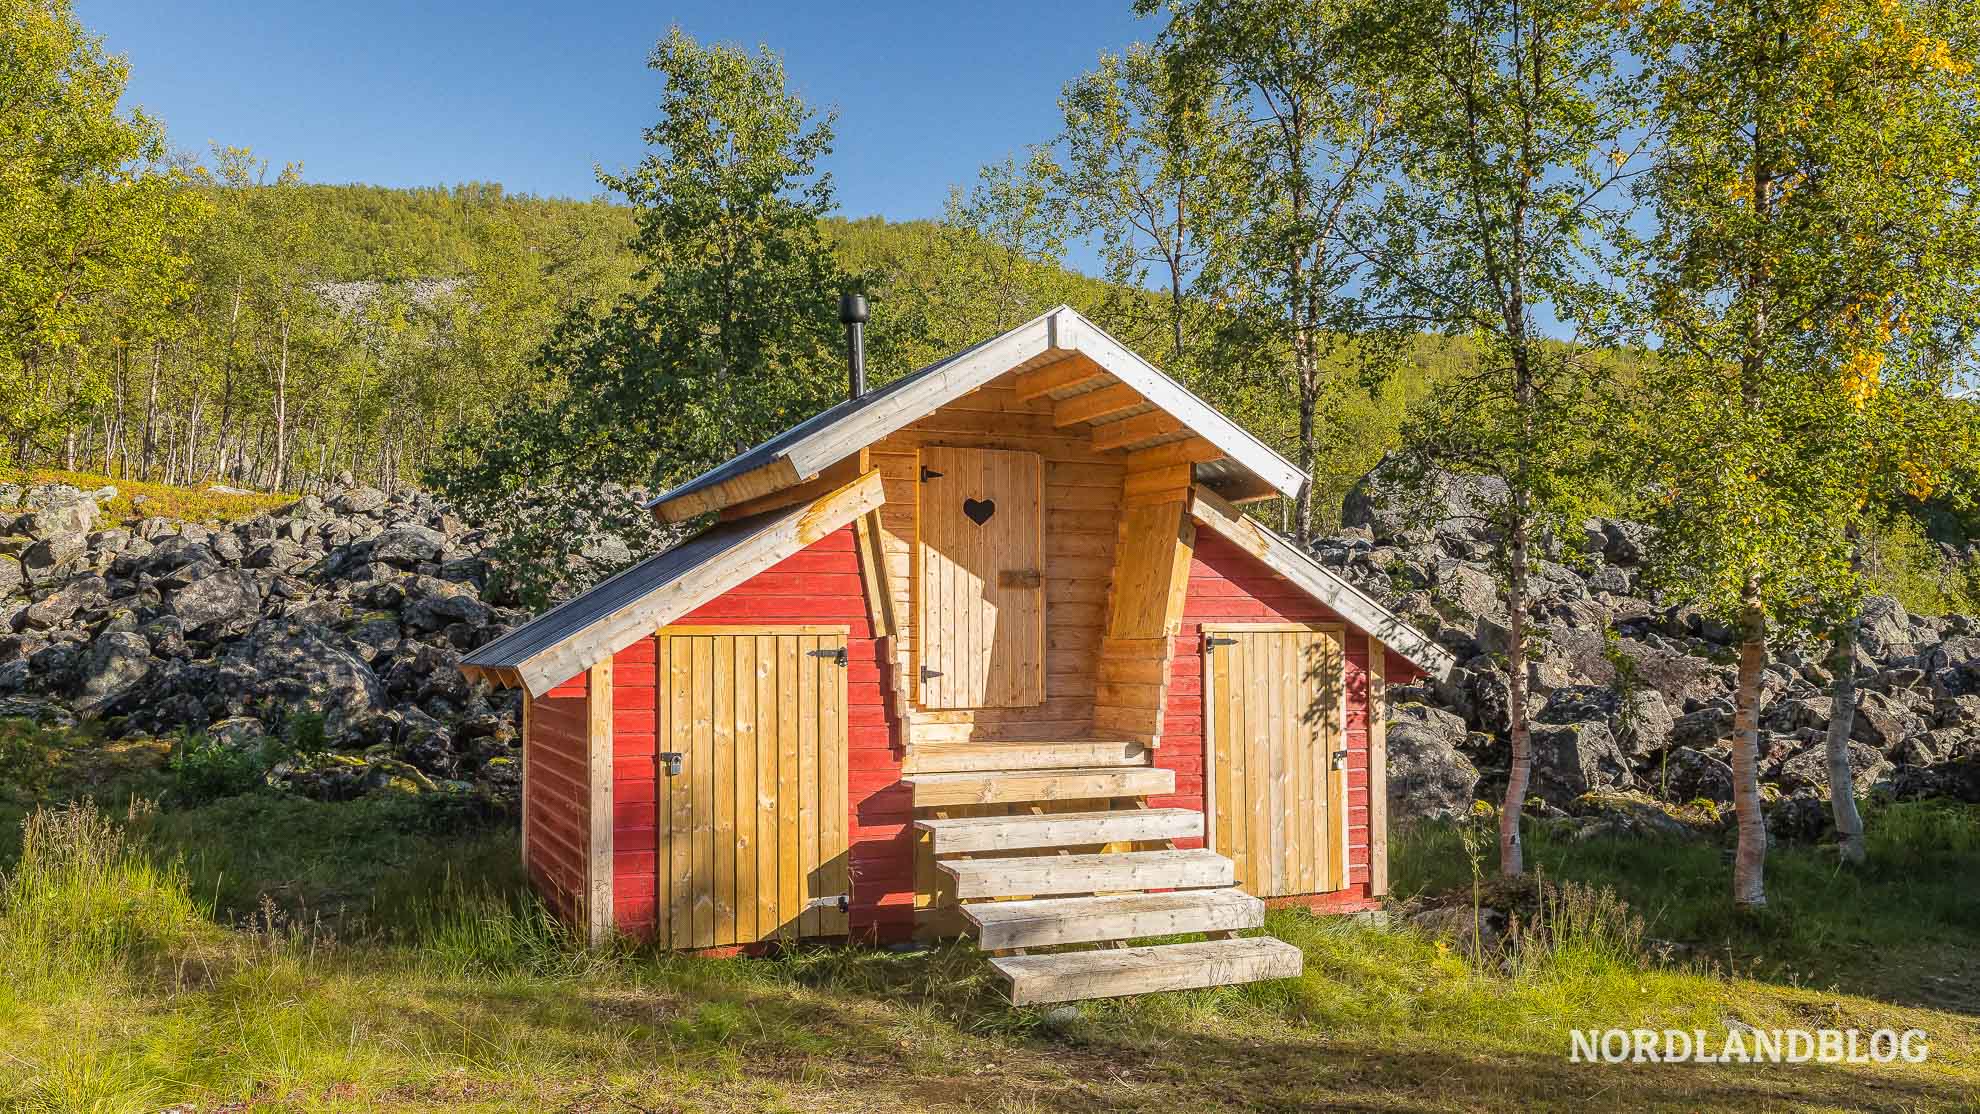 Norwegisches Toilettenhäuschen - schöner als so manche Ferienhütte